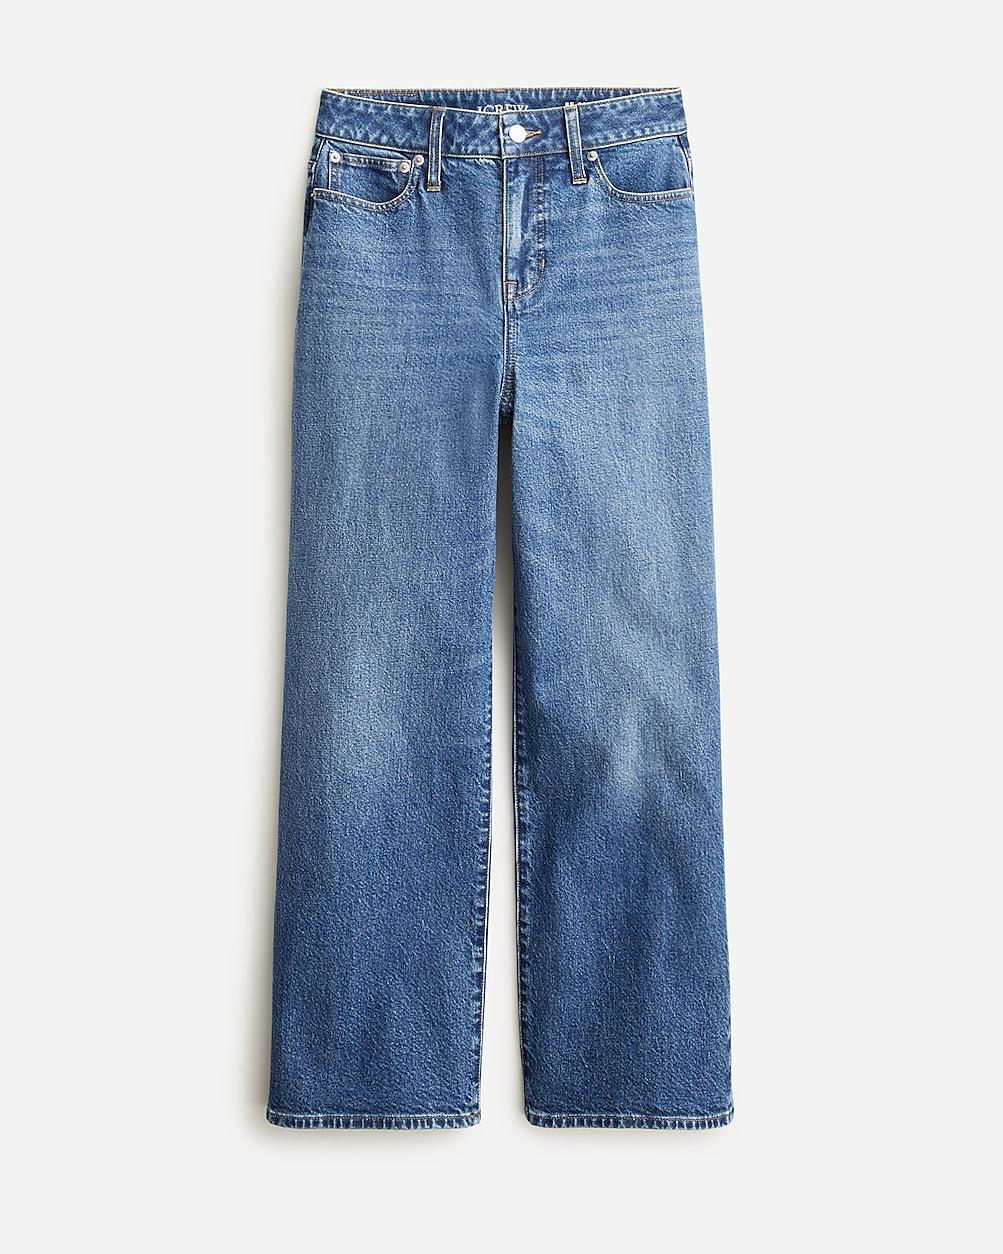 Petite curvy slim-wide jean in 1996 semi-stretch by J.CREW